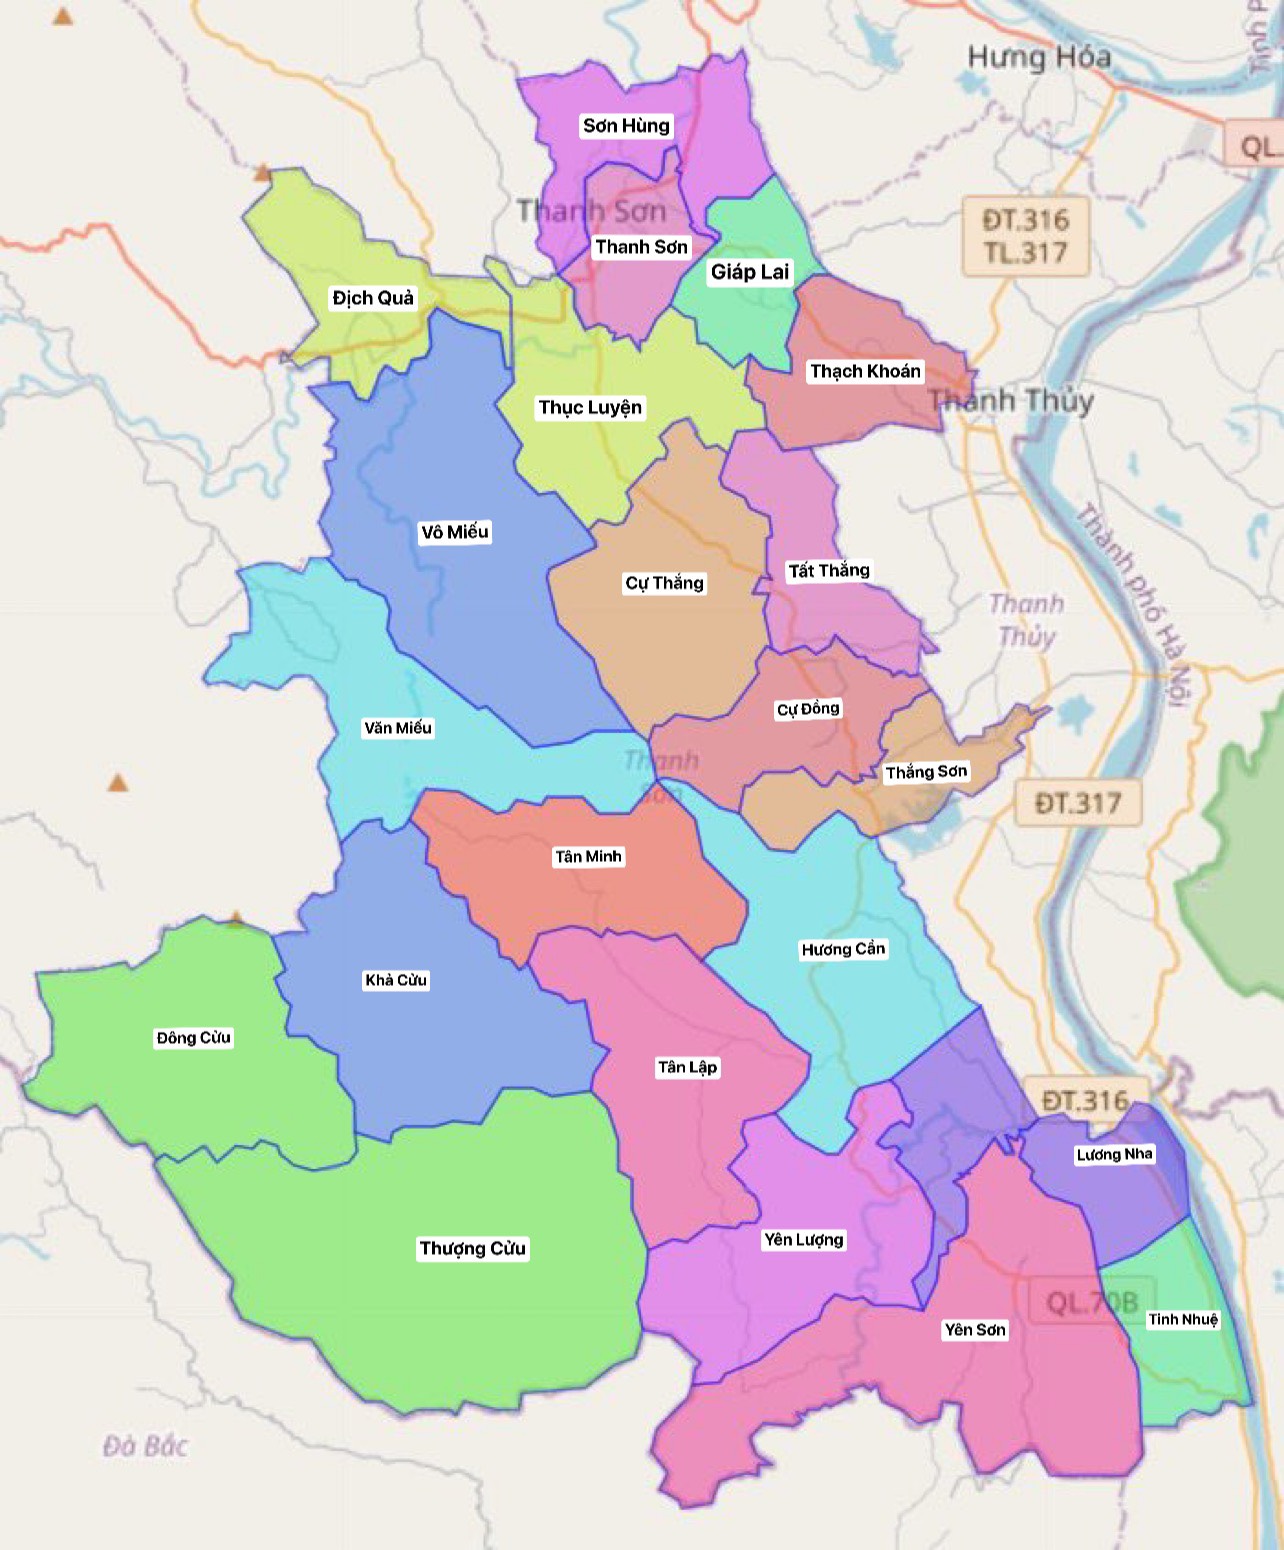 Nếu bạn đang tìm kiếm thông tin về Huyện Thanh Sơn trong tỉnh Phú Thọ, bản đồ này là một nguồn tài nguyên hữu ích để giúp bạn tìm thấy các địa điểm và thông tin chi tiết. Hãy khám phá ngay!